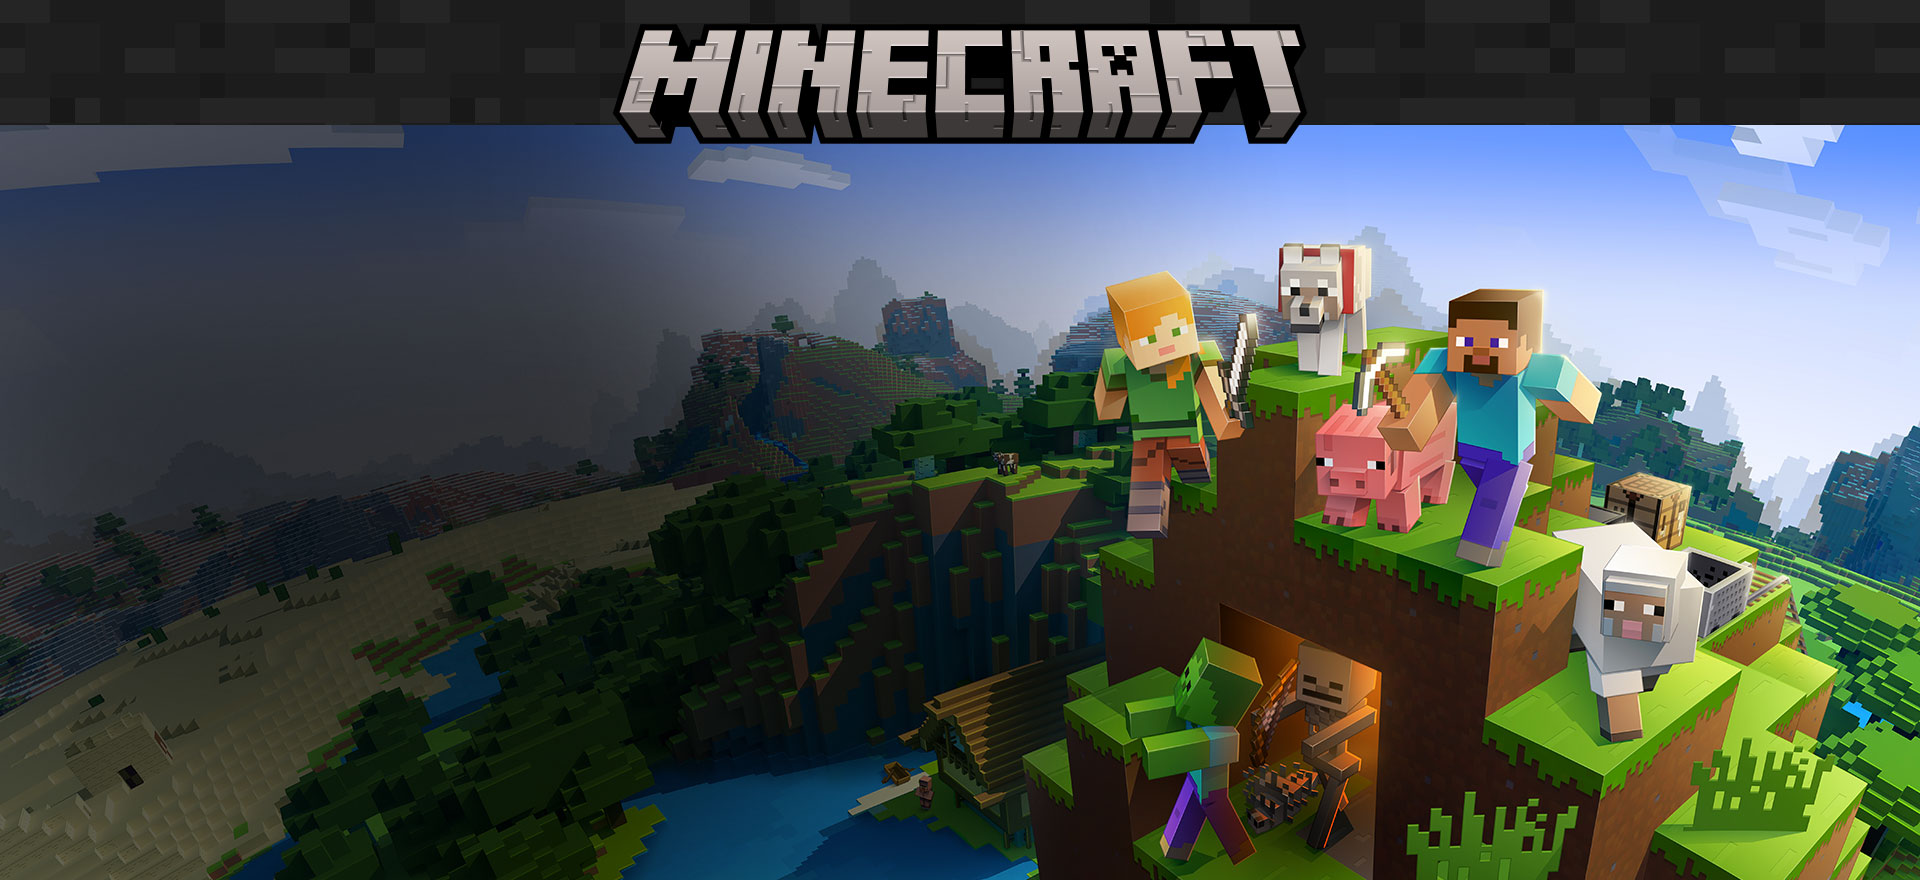 Logo hry Minecraft s postavami z hry a v pozadí je prostredie s blokmi